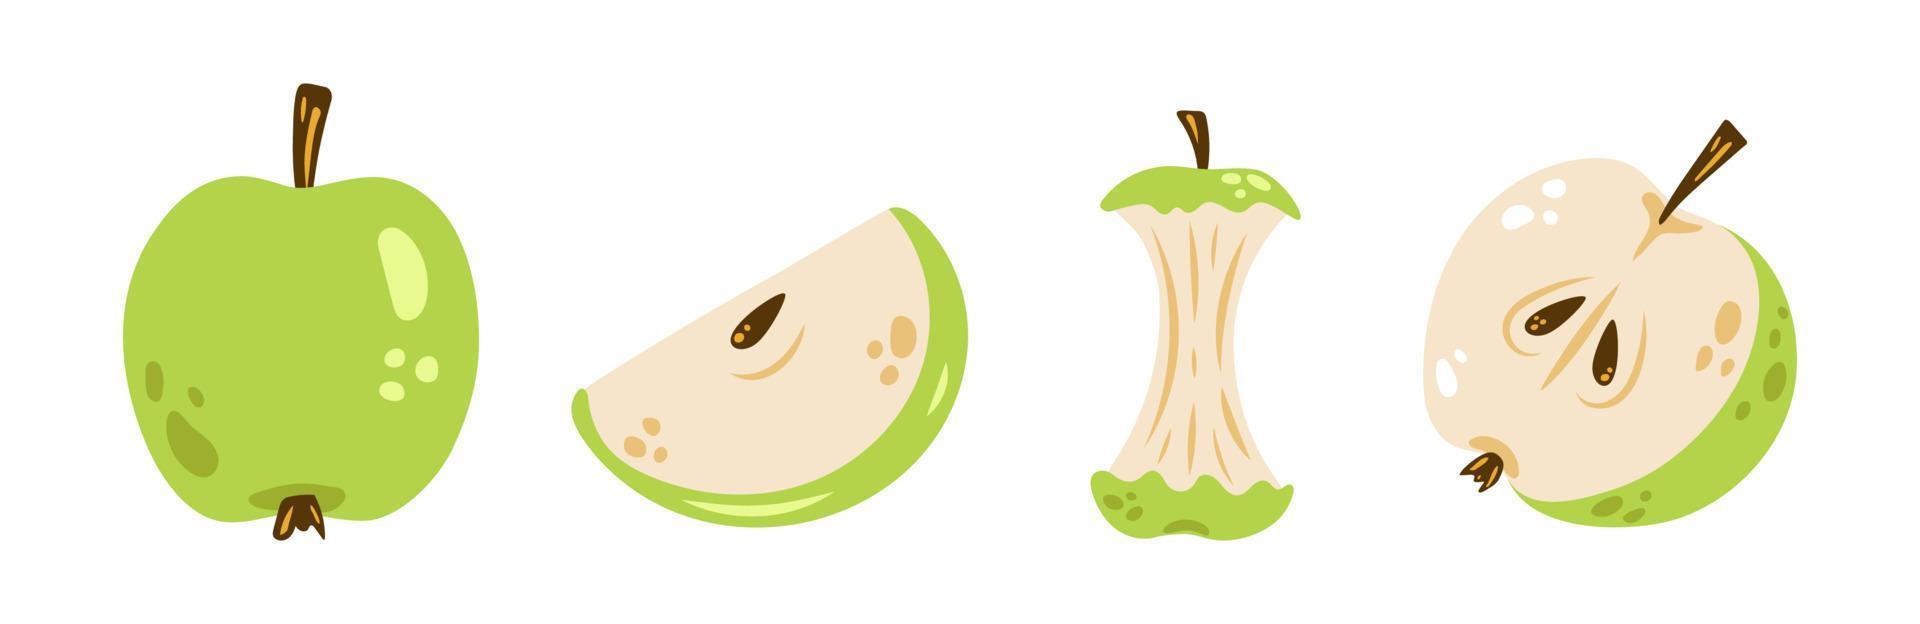 conjunto de manzana vectorial. lindas manzanas verdes en diseño plano. colección colorida de manzana entera, media manzana, rebanada y núcleo de manzana. vector